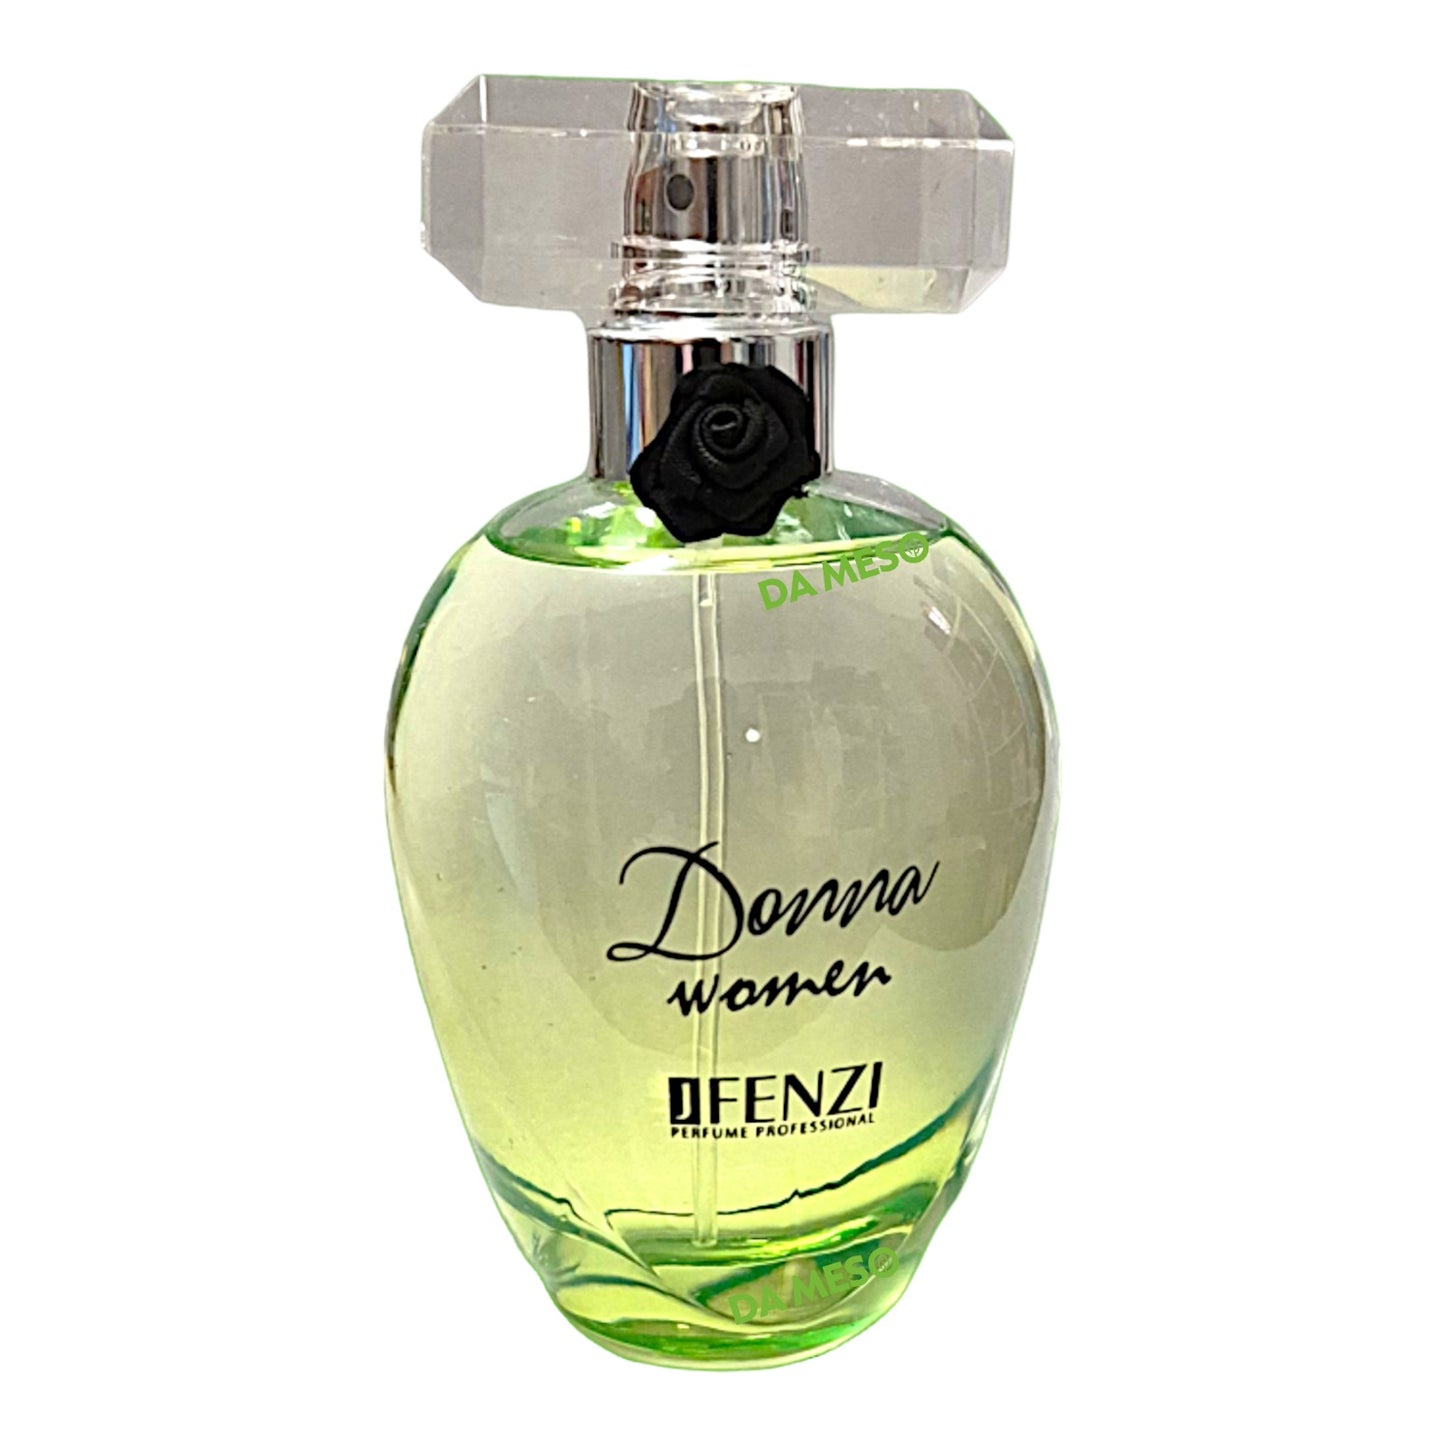 JFenzi Donna Day und Night Woman Eau de Parfum 100 ml